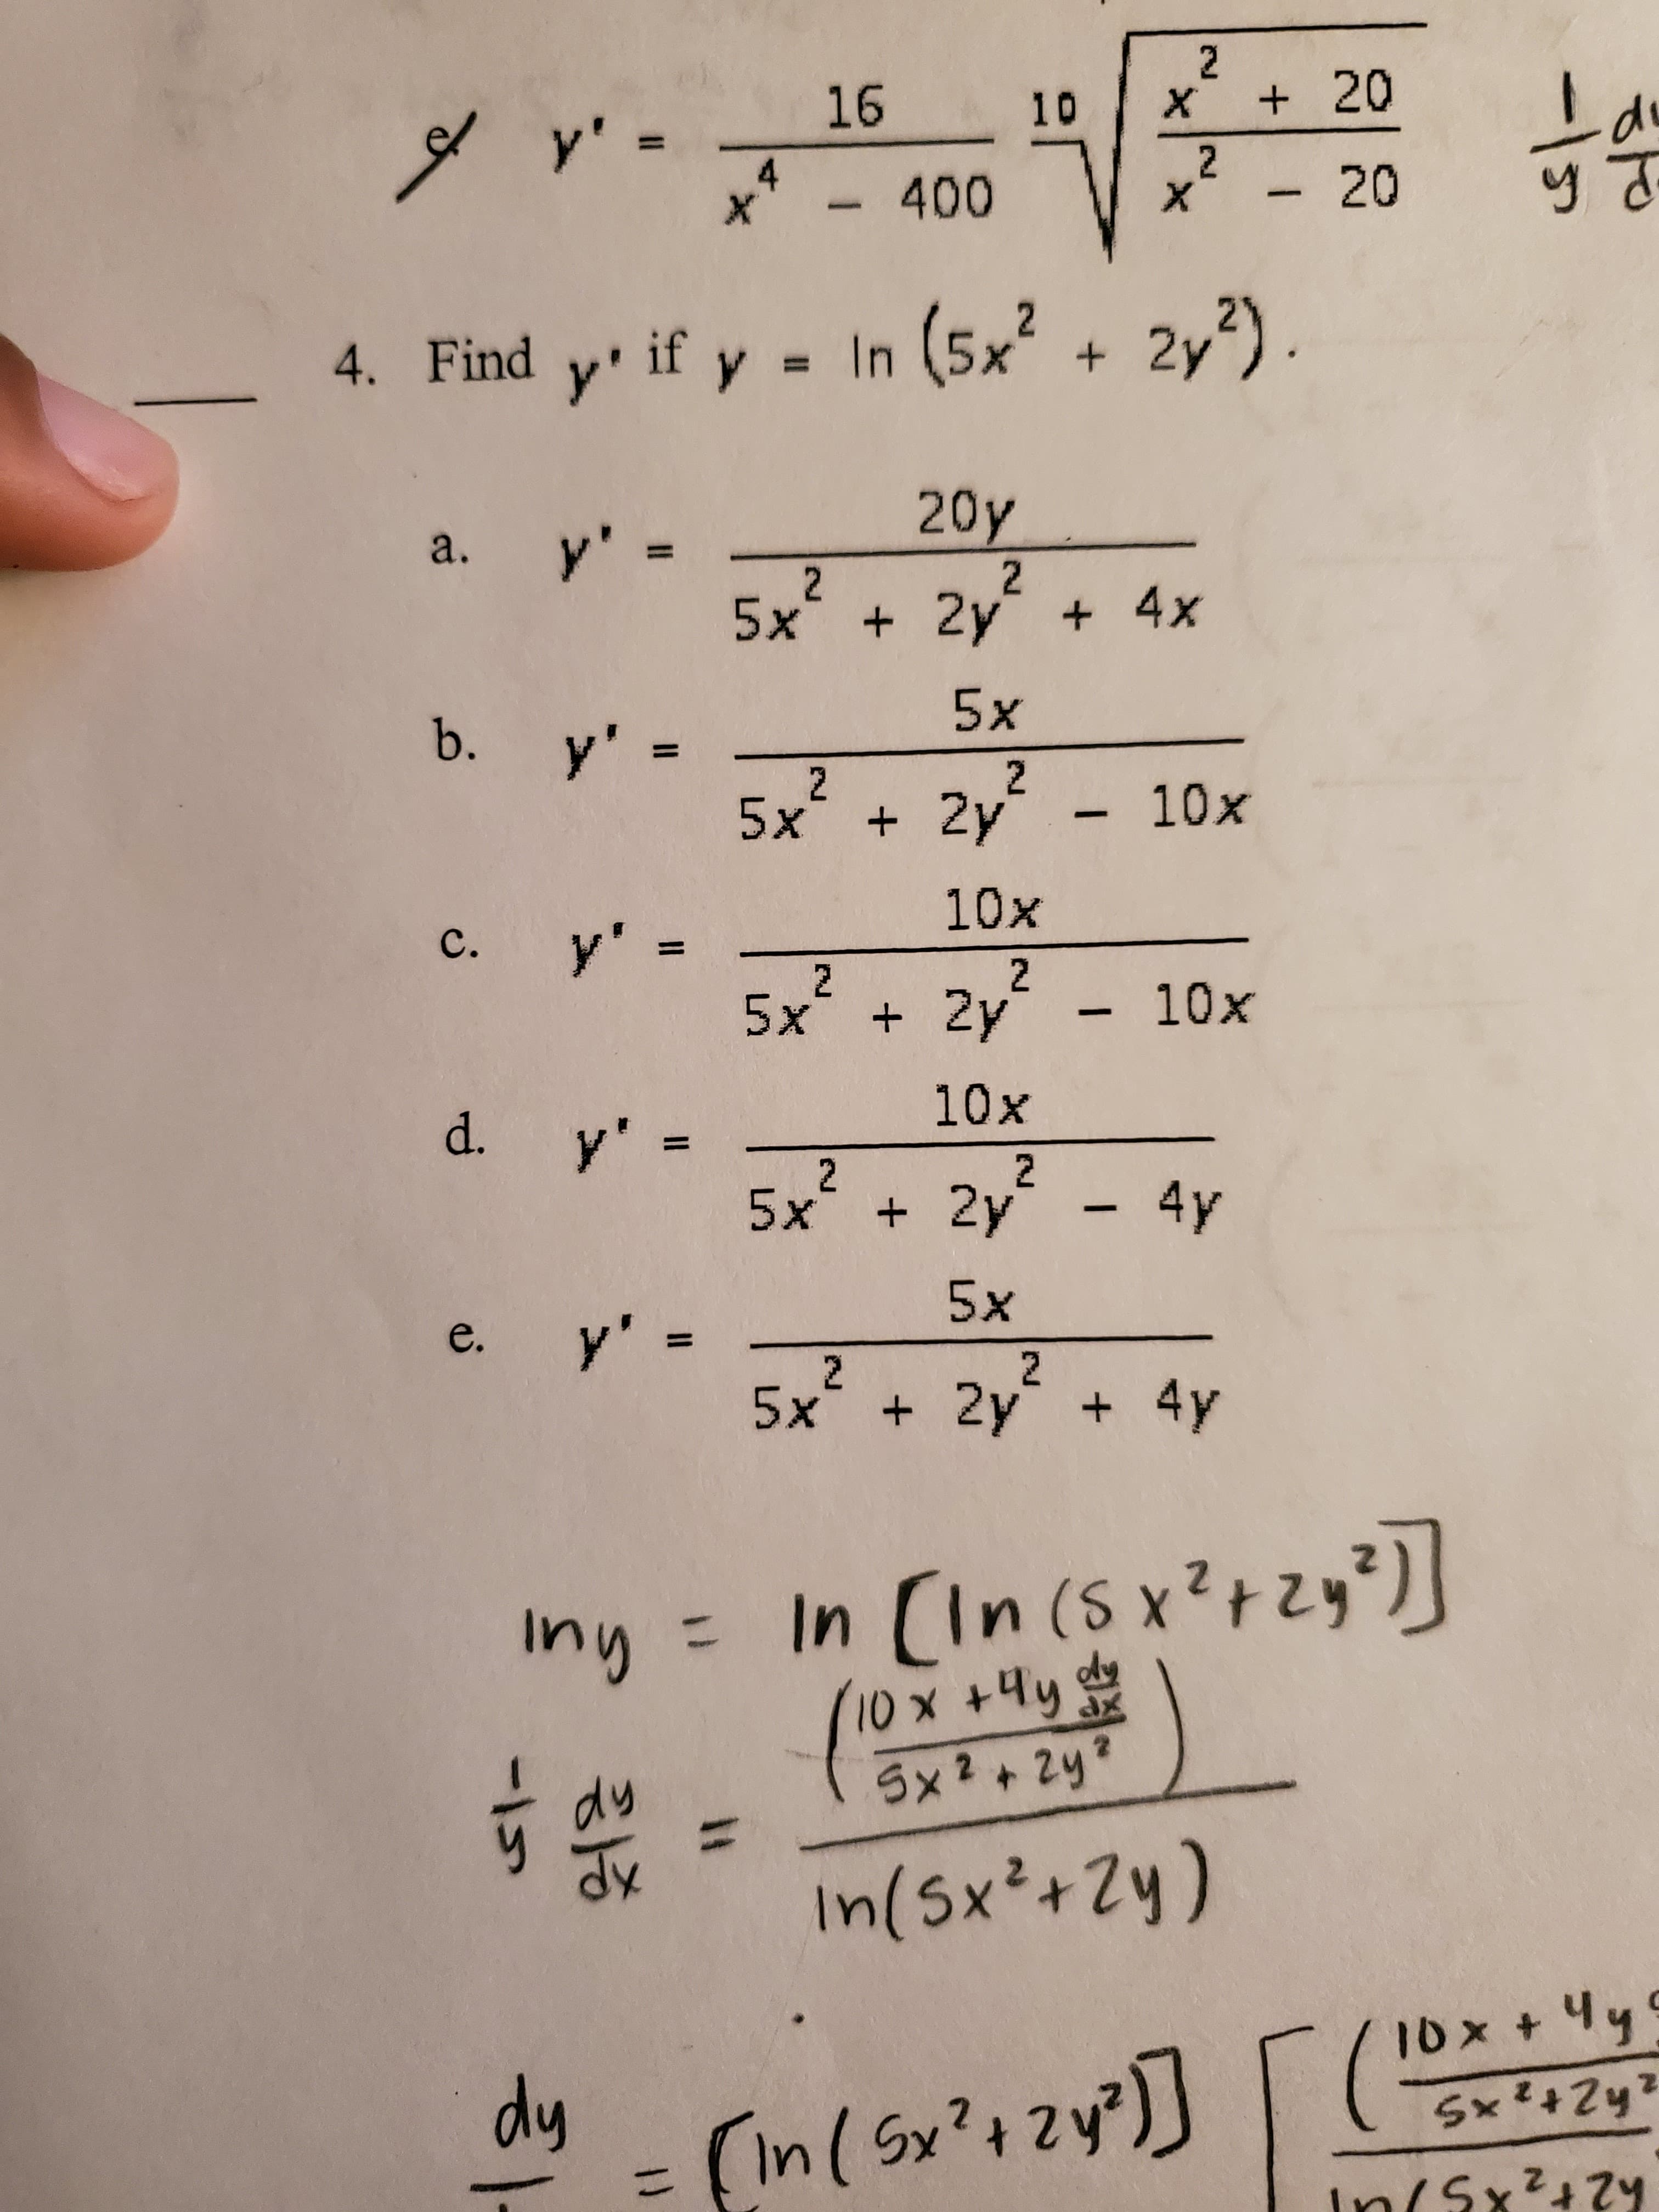 2
16
20
y' =
X
10
1
2
4
- 20
- 400
X
X
4. Find y if y In (5x+ 2y)
20y
y'
a.
11
2
+4x
2
5x 2y
5x
b.
y' =
2
2
10x
5x 2y
10x
y' =
C.
2
2
+ 2y
5x
10x
10x
d. y'
2
2
5x
+ 2y - 4y
5x
y' =
5x 2y +
e.
2
4y
n (S xt
dy
In Cin (Sx2
Iny =
Sx2+29
In(5x2+2y)
dy
In ( Sx2t 2
Sx+2y
In(Sx+7
H
Il
II
ID
S1-
